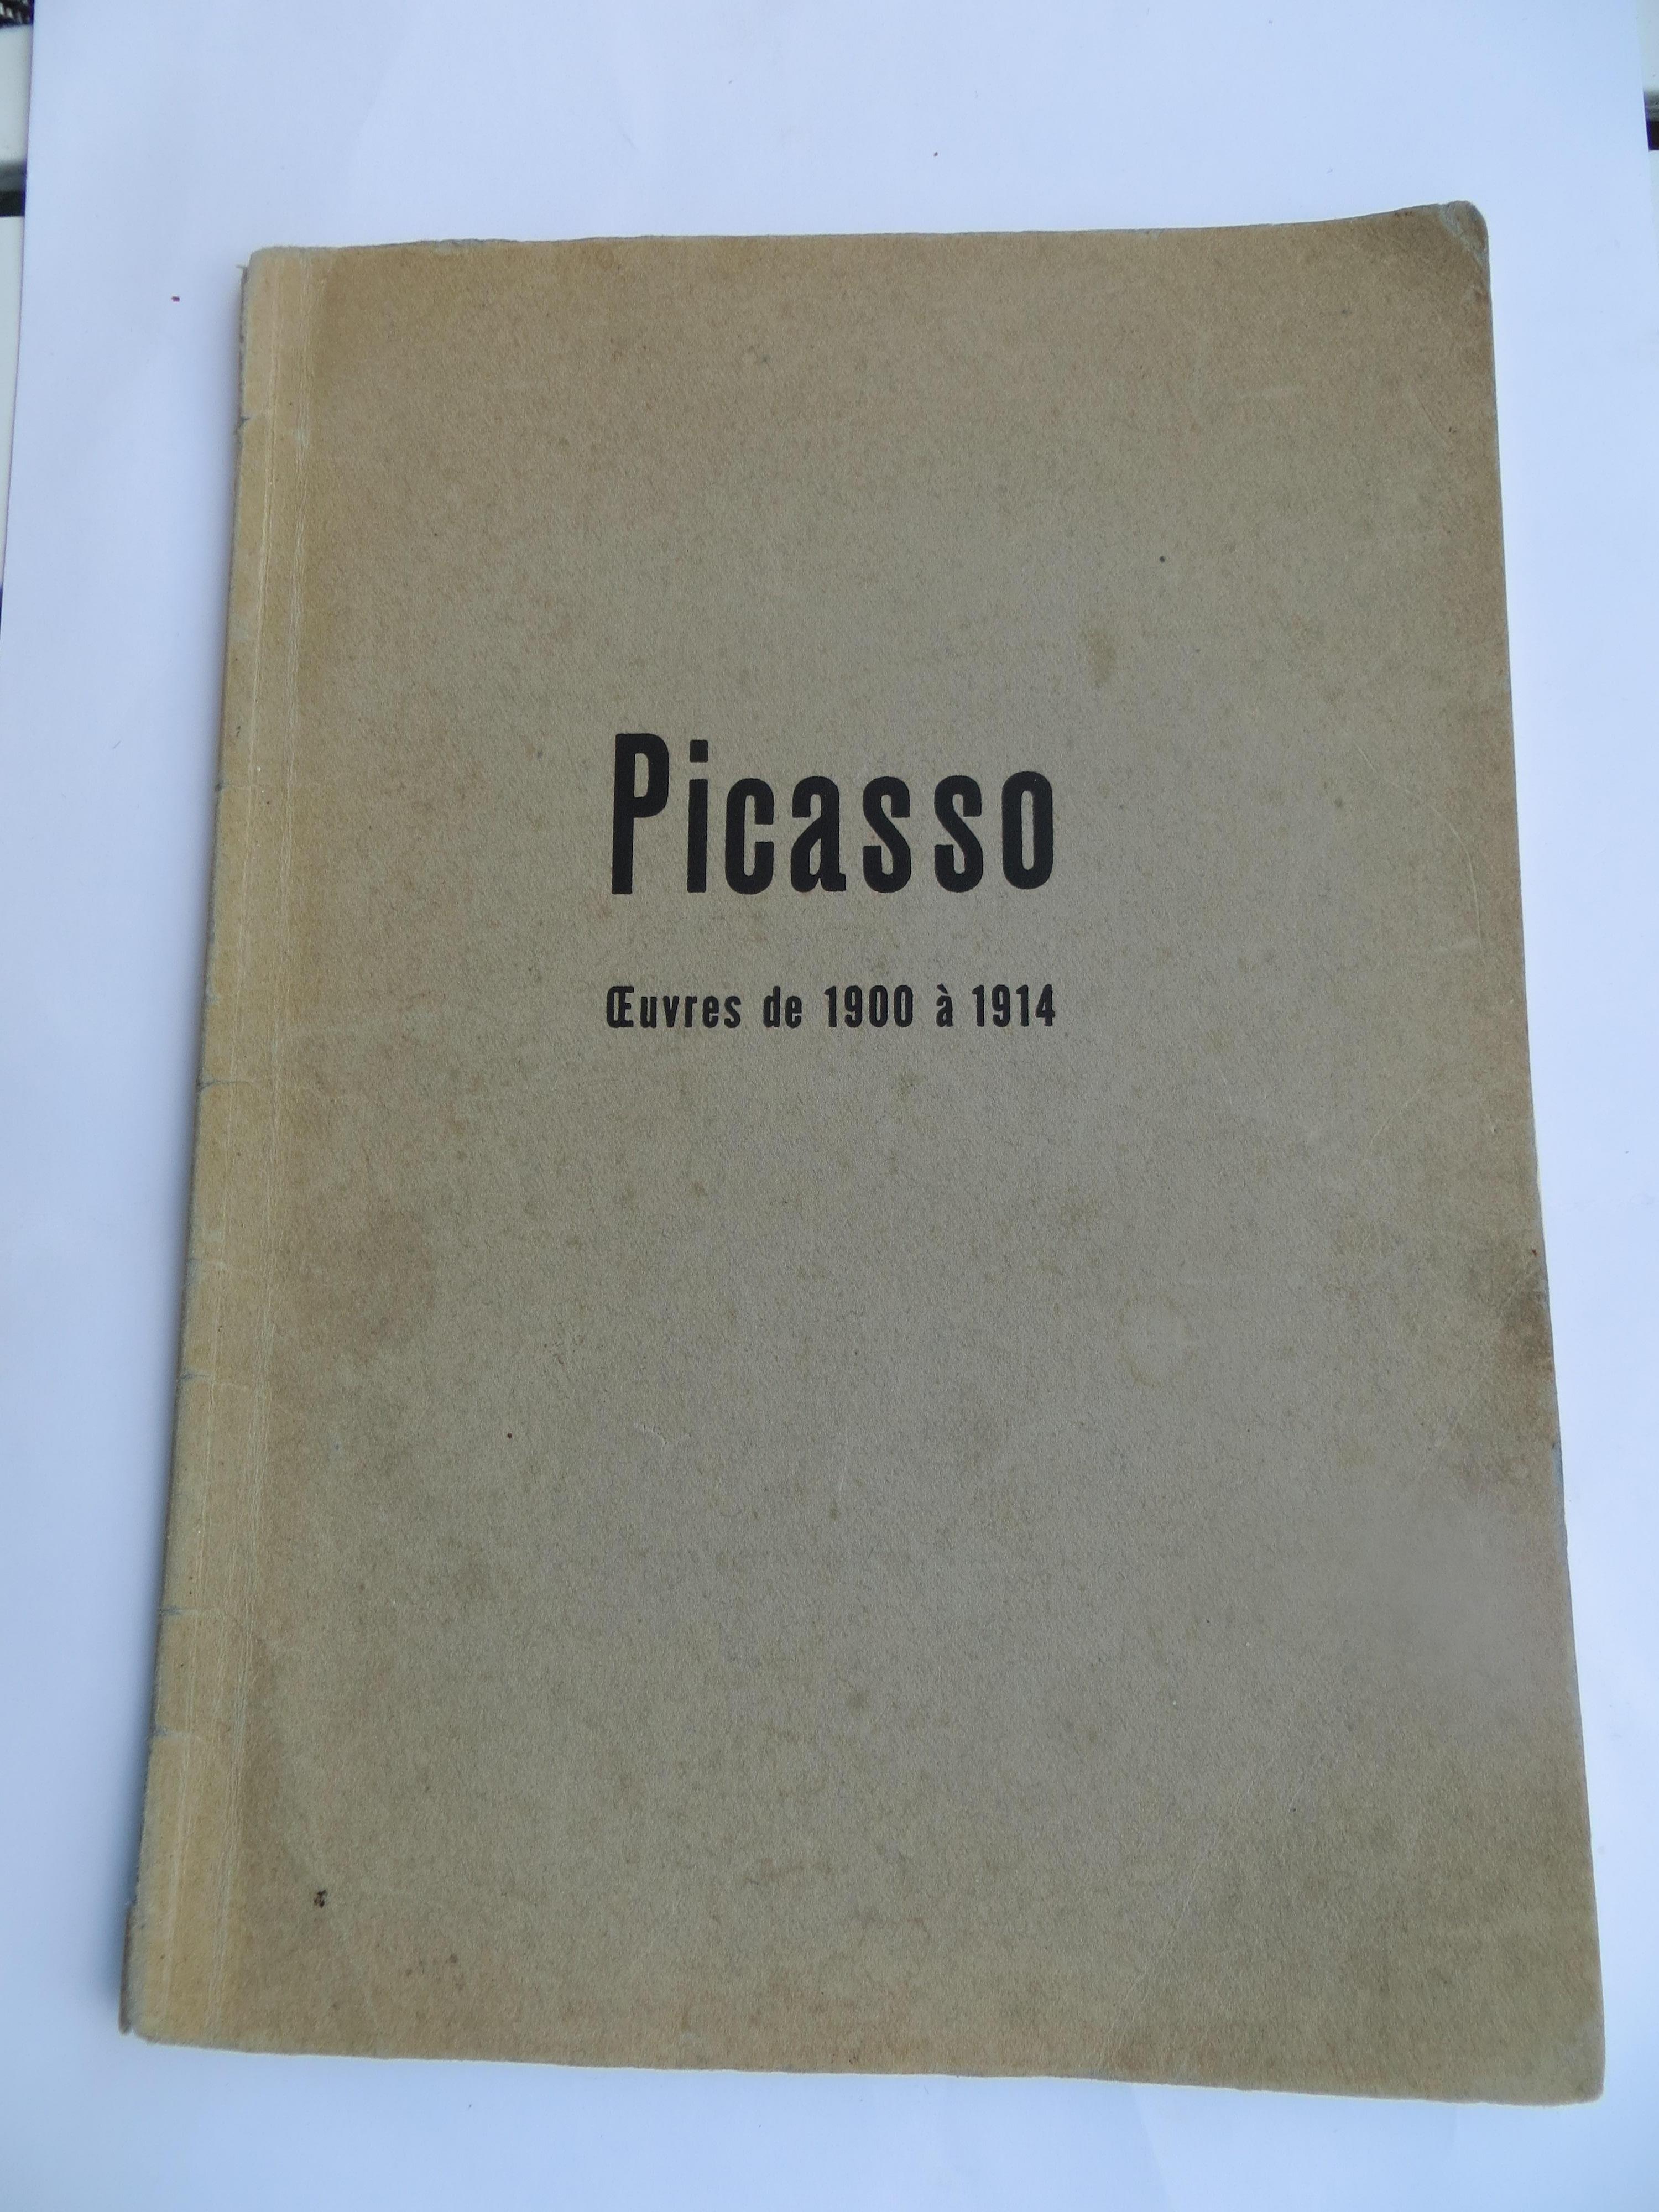 Picasso. Oeuvres de 1900 à 1914. Signature écrite à la main d'Oeuvres de musees - Print de Pablo Picasso